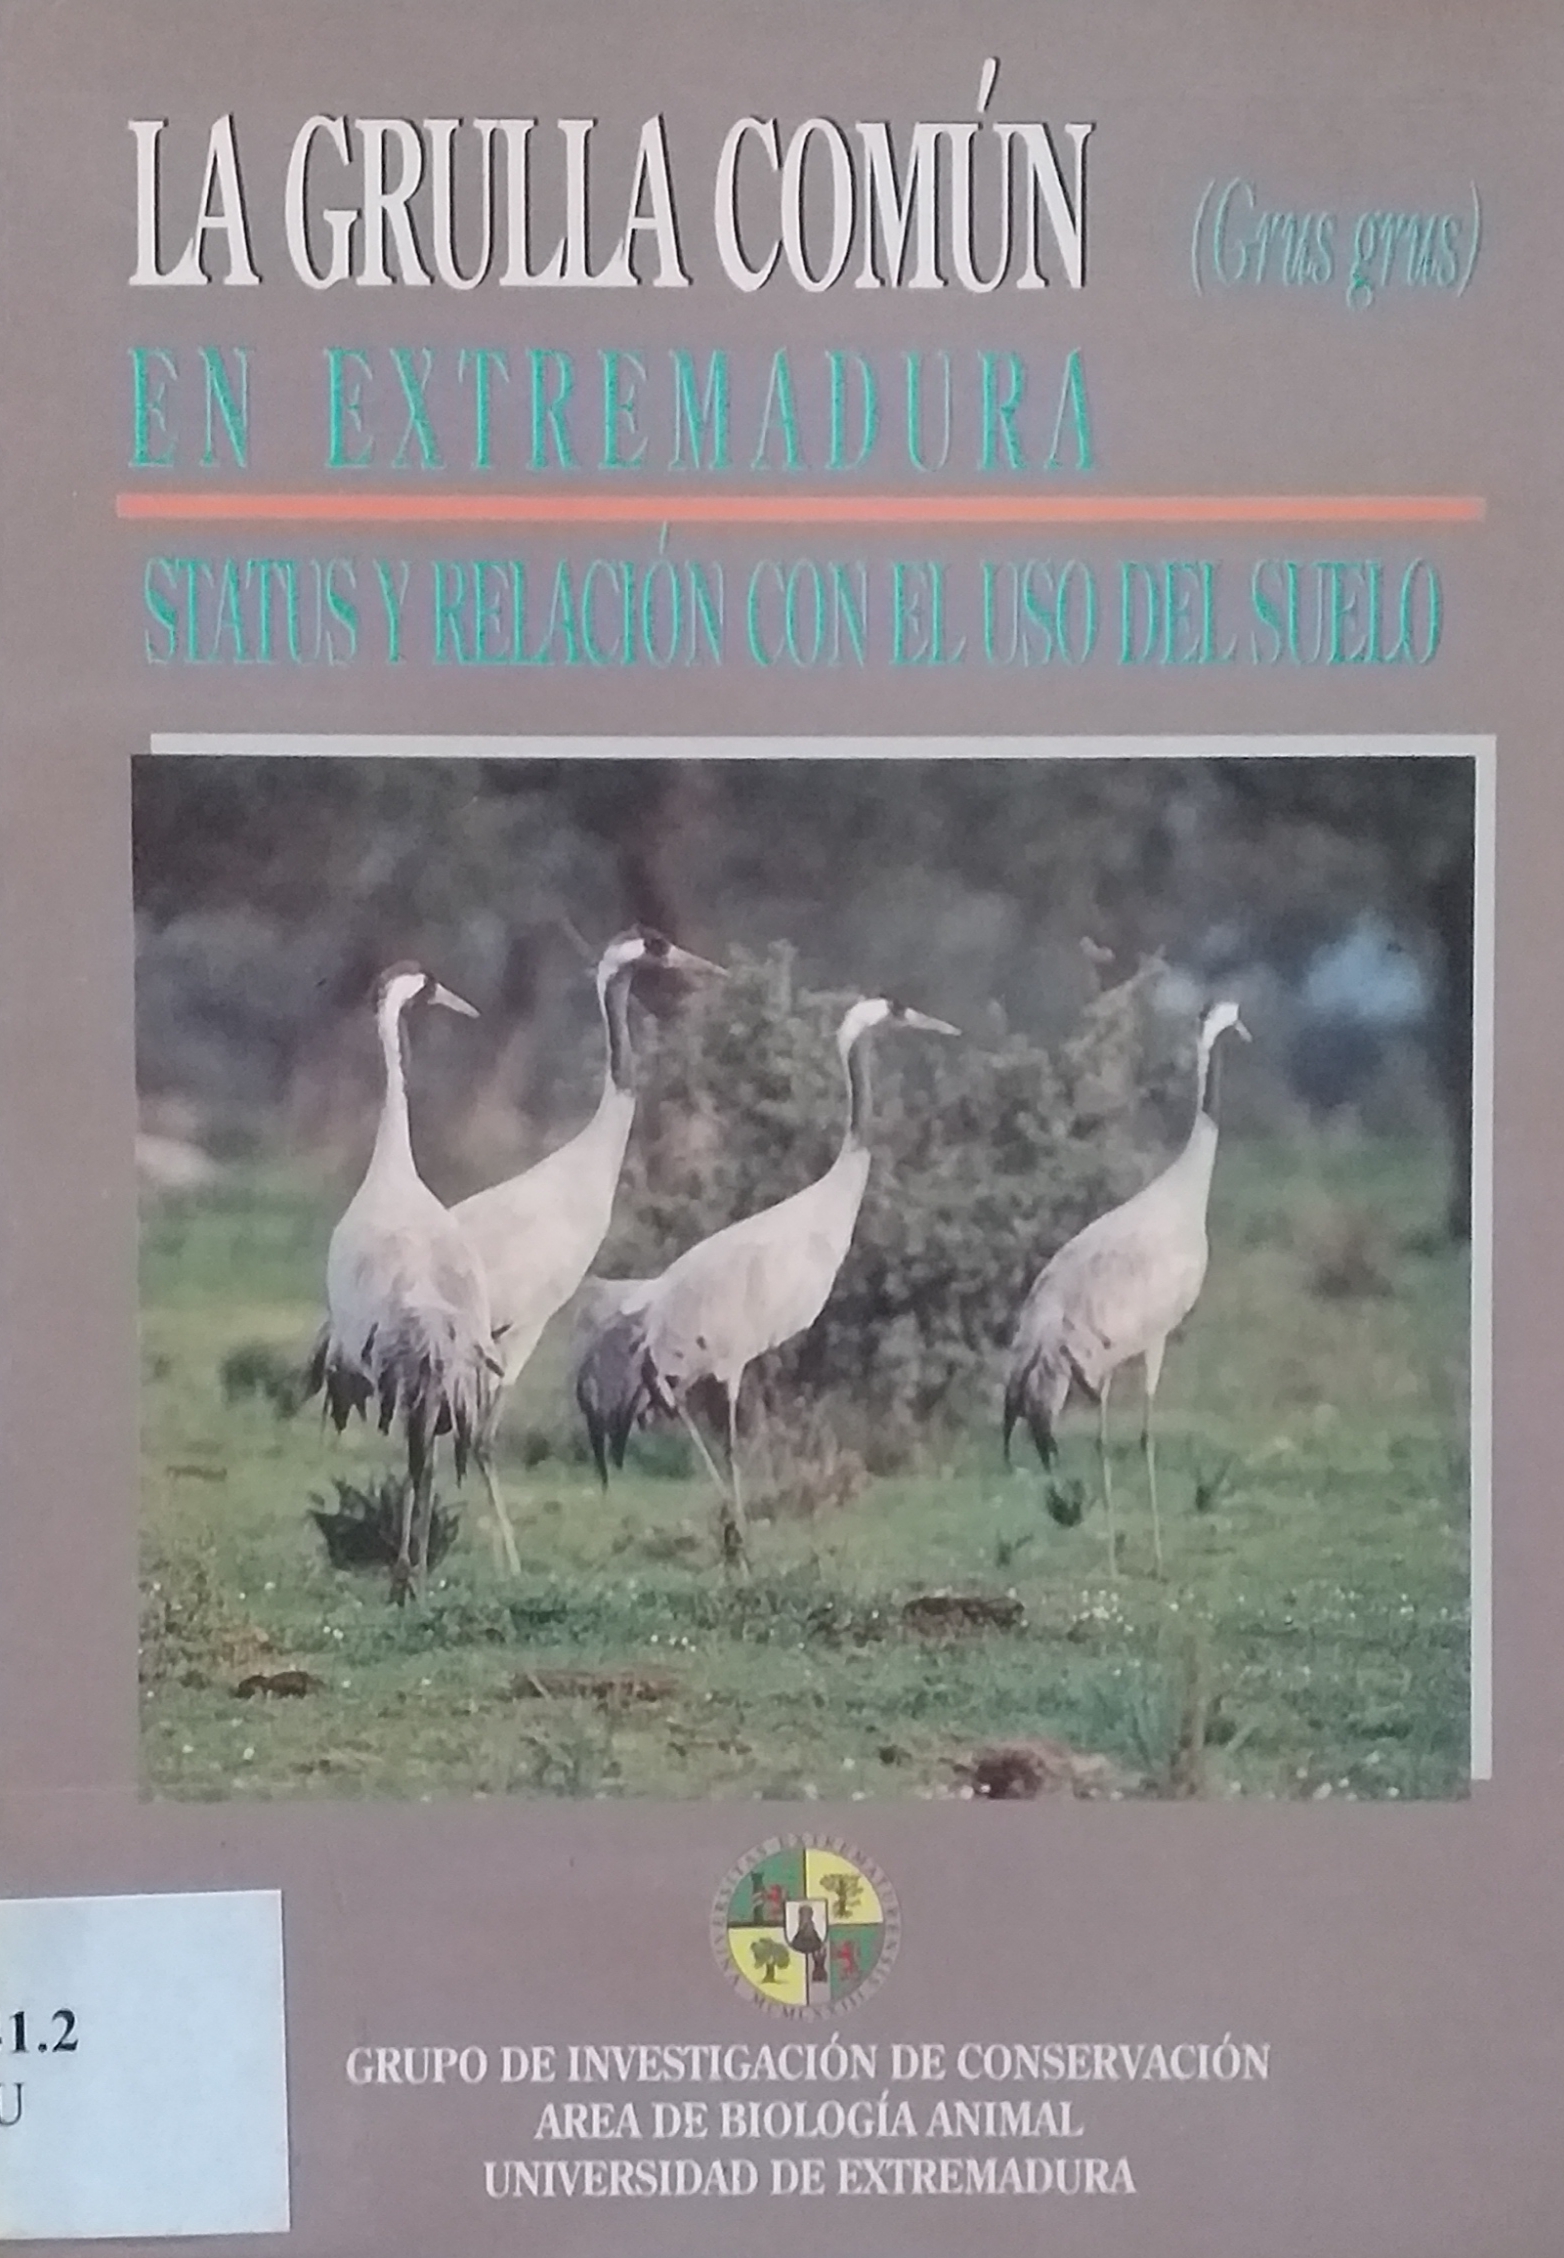 Imagen de portada del libro La grulla común (Grus grus) en Extremadura